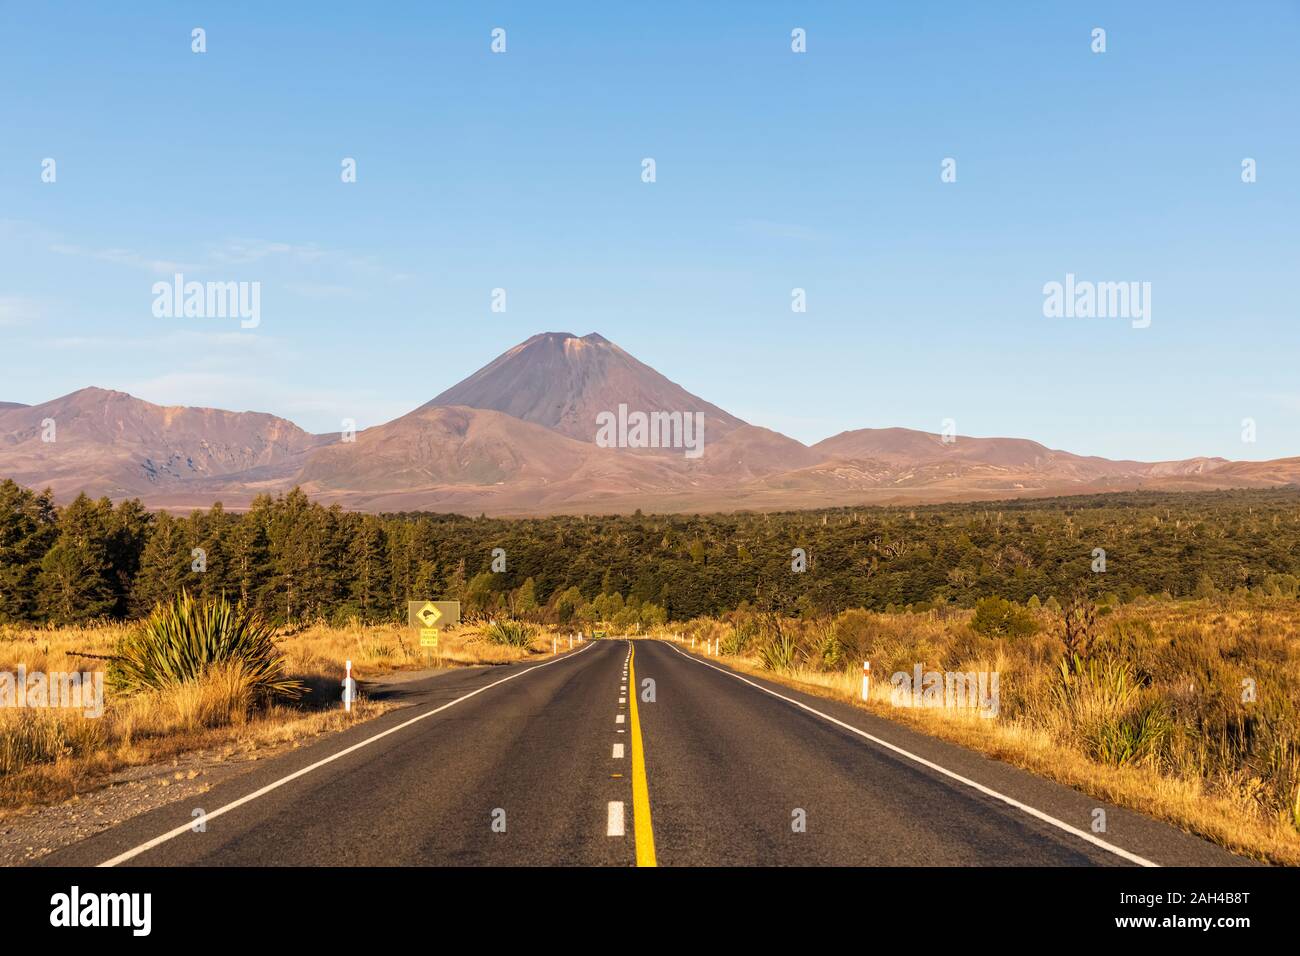 Nuova Zelanda, Isola del nord, diminuendo prospettiva della Statale 48 con il Monte Ngauruhoe incombente in background Foto Stock